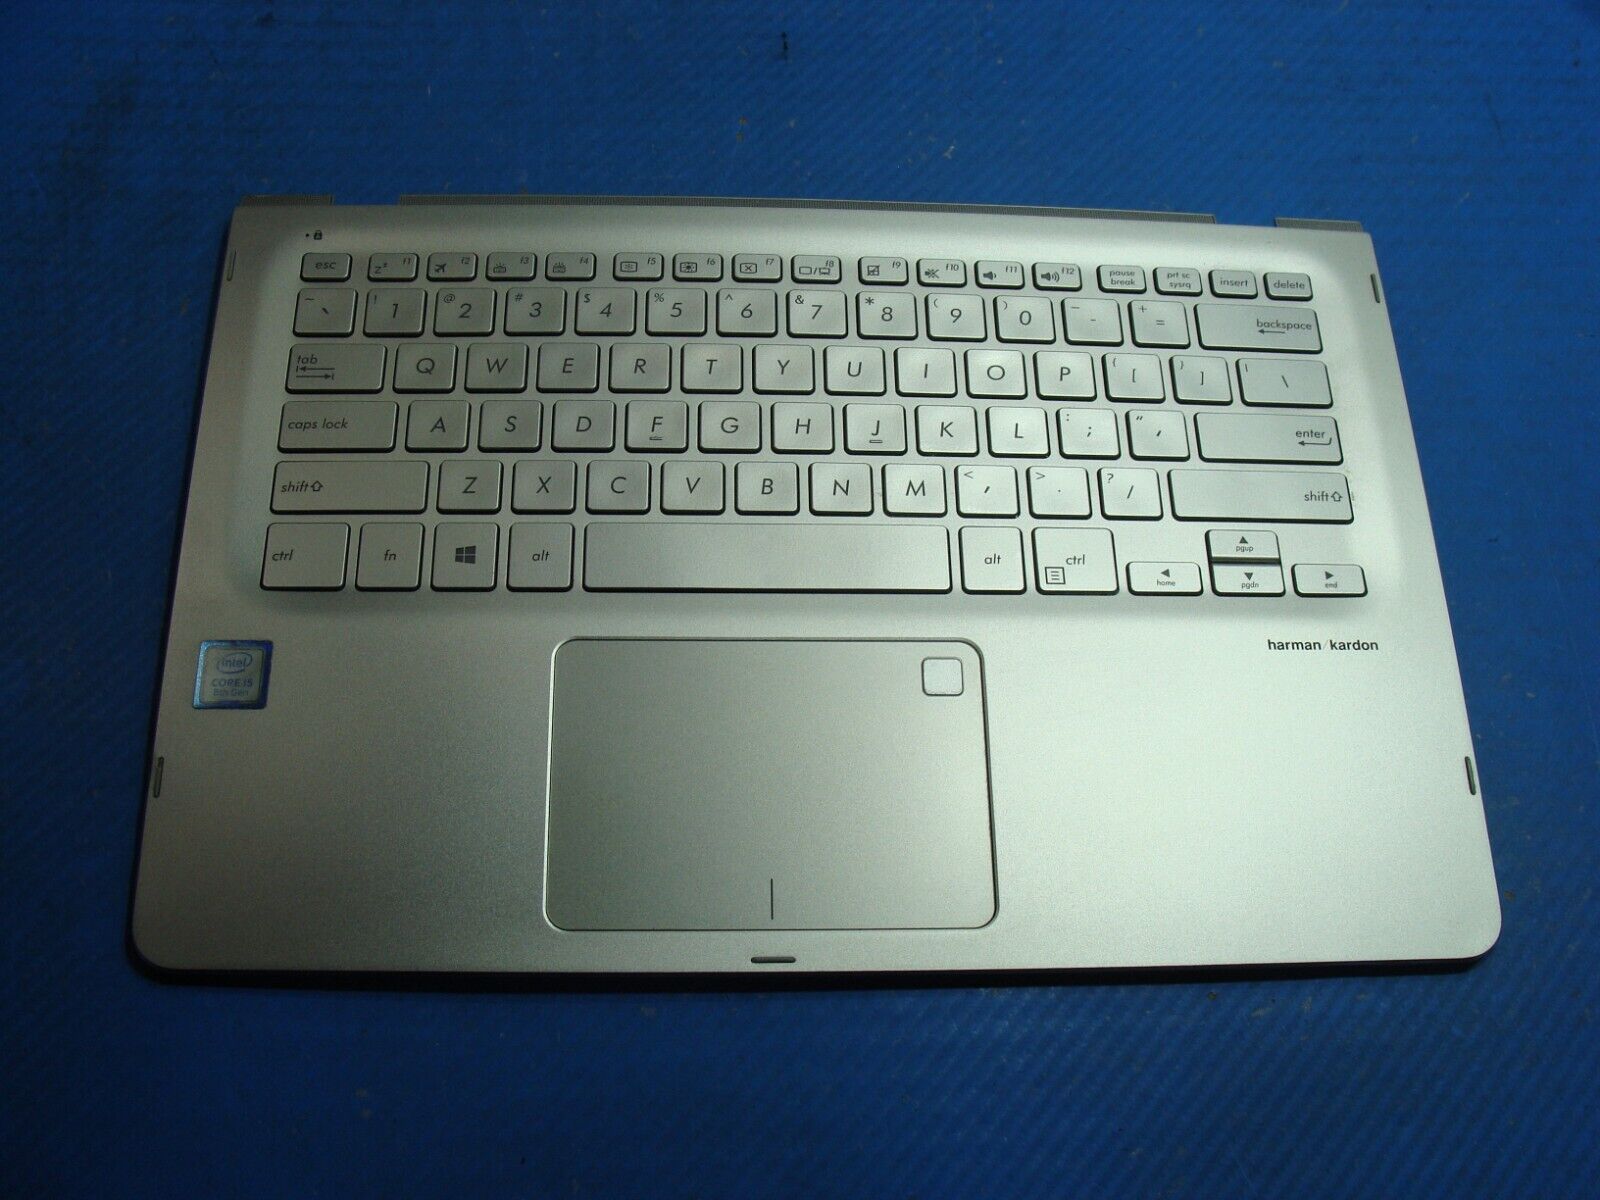 Asus 14” Q405UA-BI5T5 Palmrest w/Backlit Keyboard TouchPad 3BBKJTAJN20 Grade A